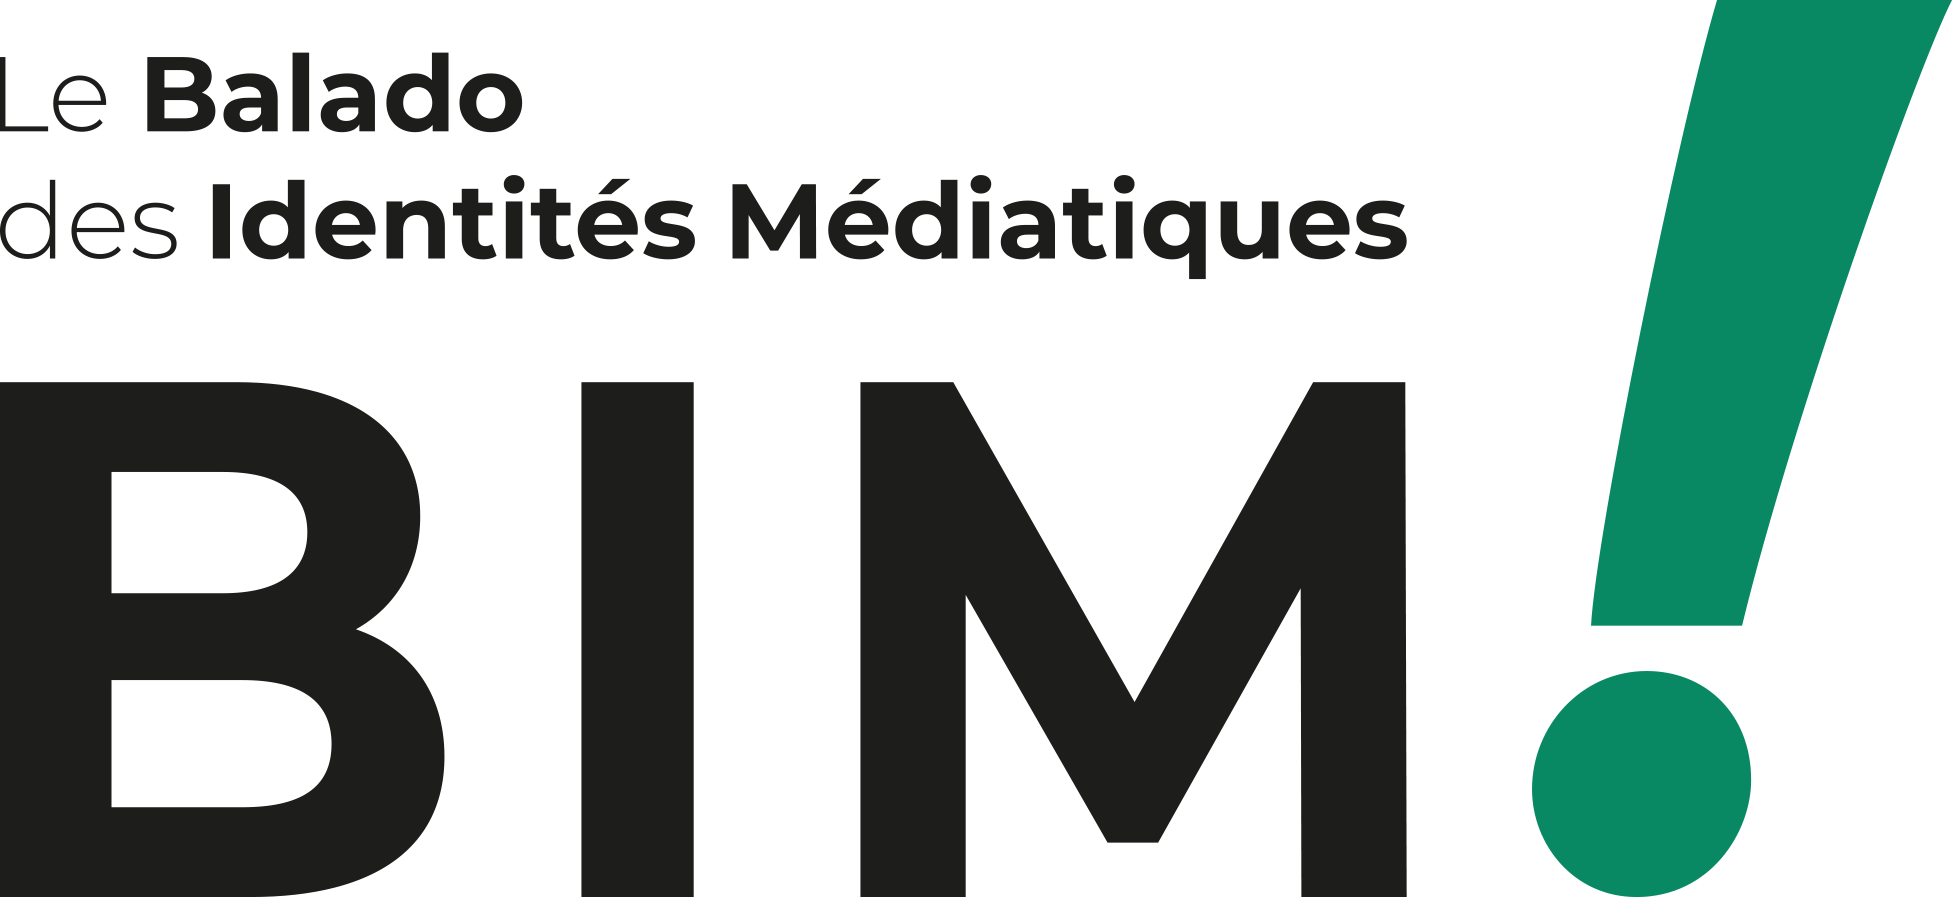 Read more about the article BIM ! Le balado des identités médiatiques (french only)